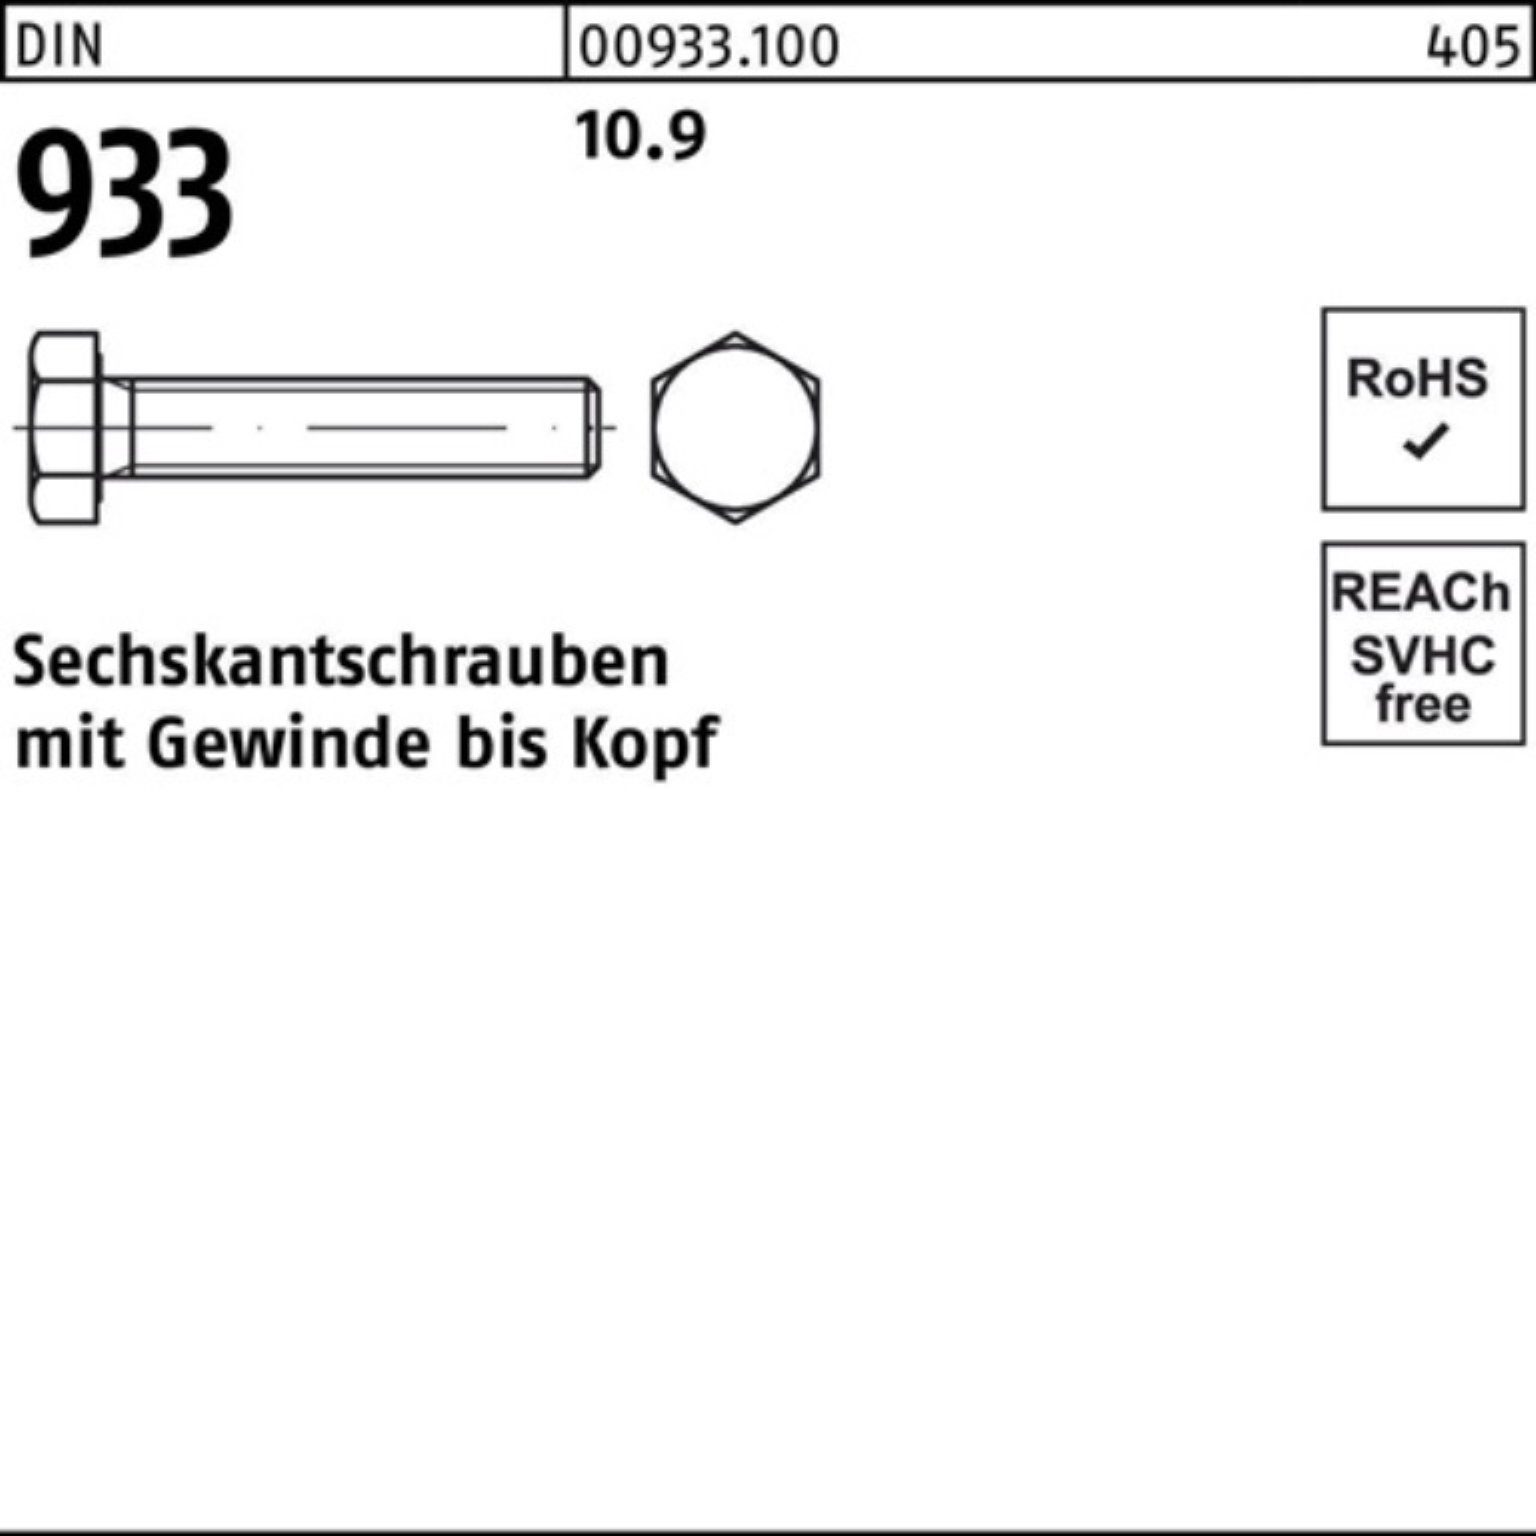 50 25 10.9 Sechskantschraube Reyher DIN VG Pack DIN Sechskantschraube M22x Stück 933 933 100er